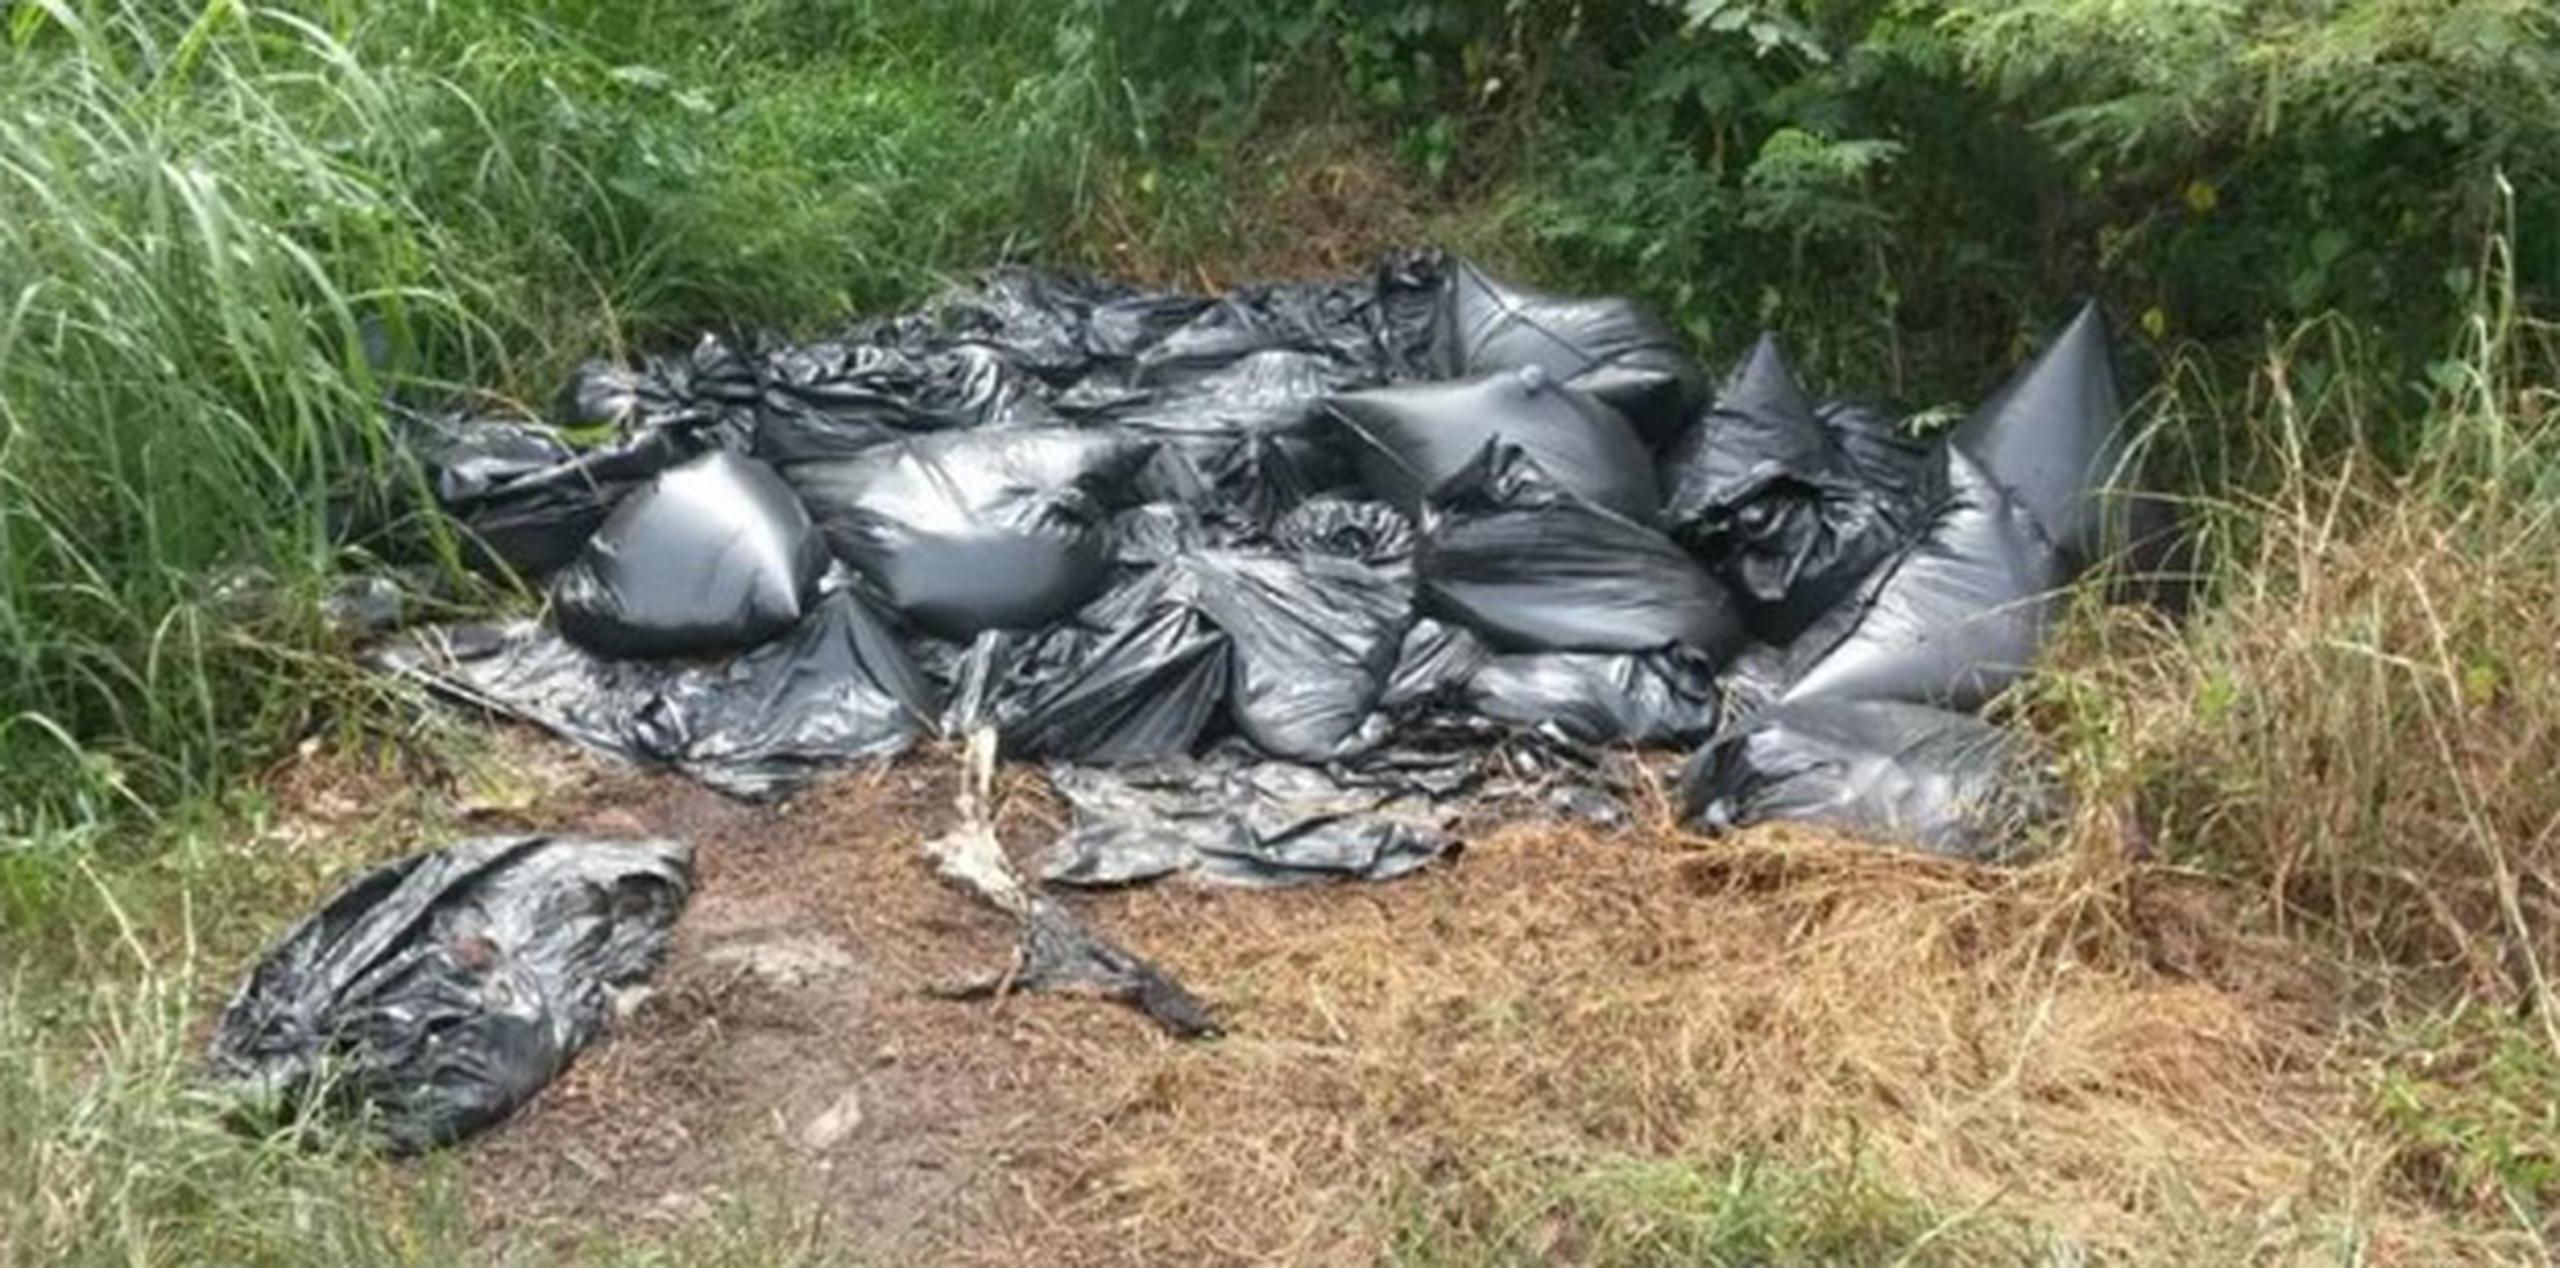 Precisamente en Río Grande ya se han reportado dos casos similares cuando el pasado 17 de mayo, las autoridades encontraron 43 bolsas plásticas con restos de perros. (Archivo)